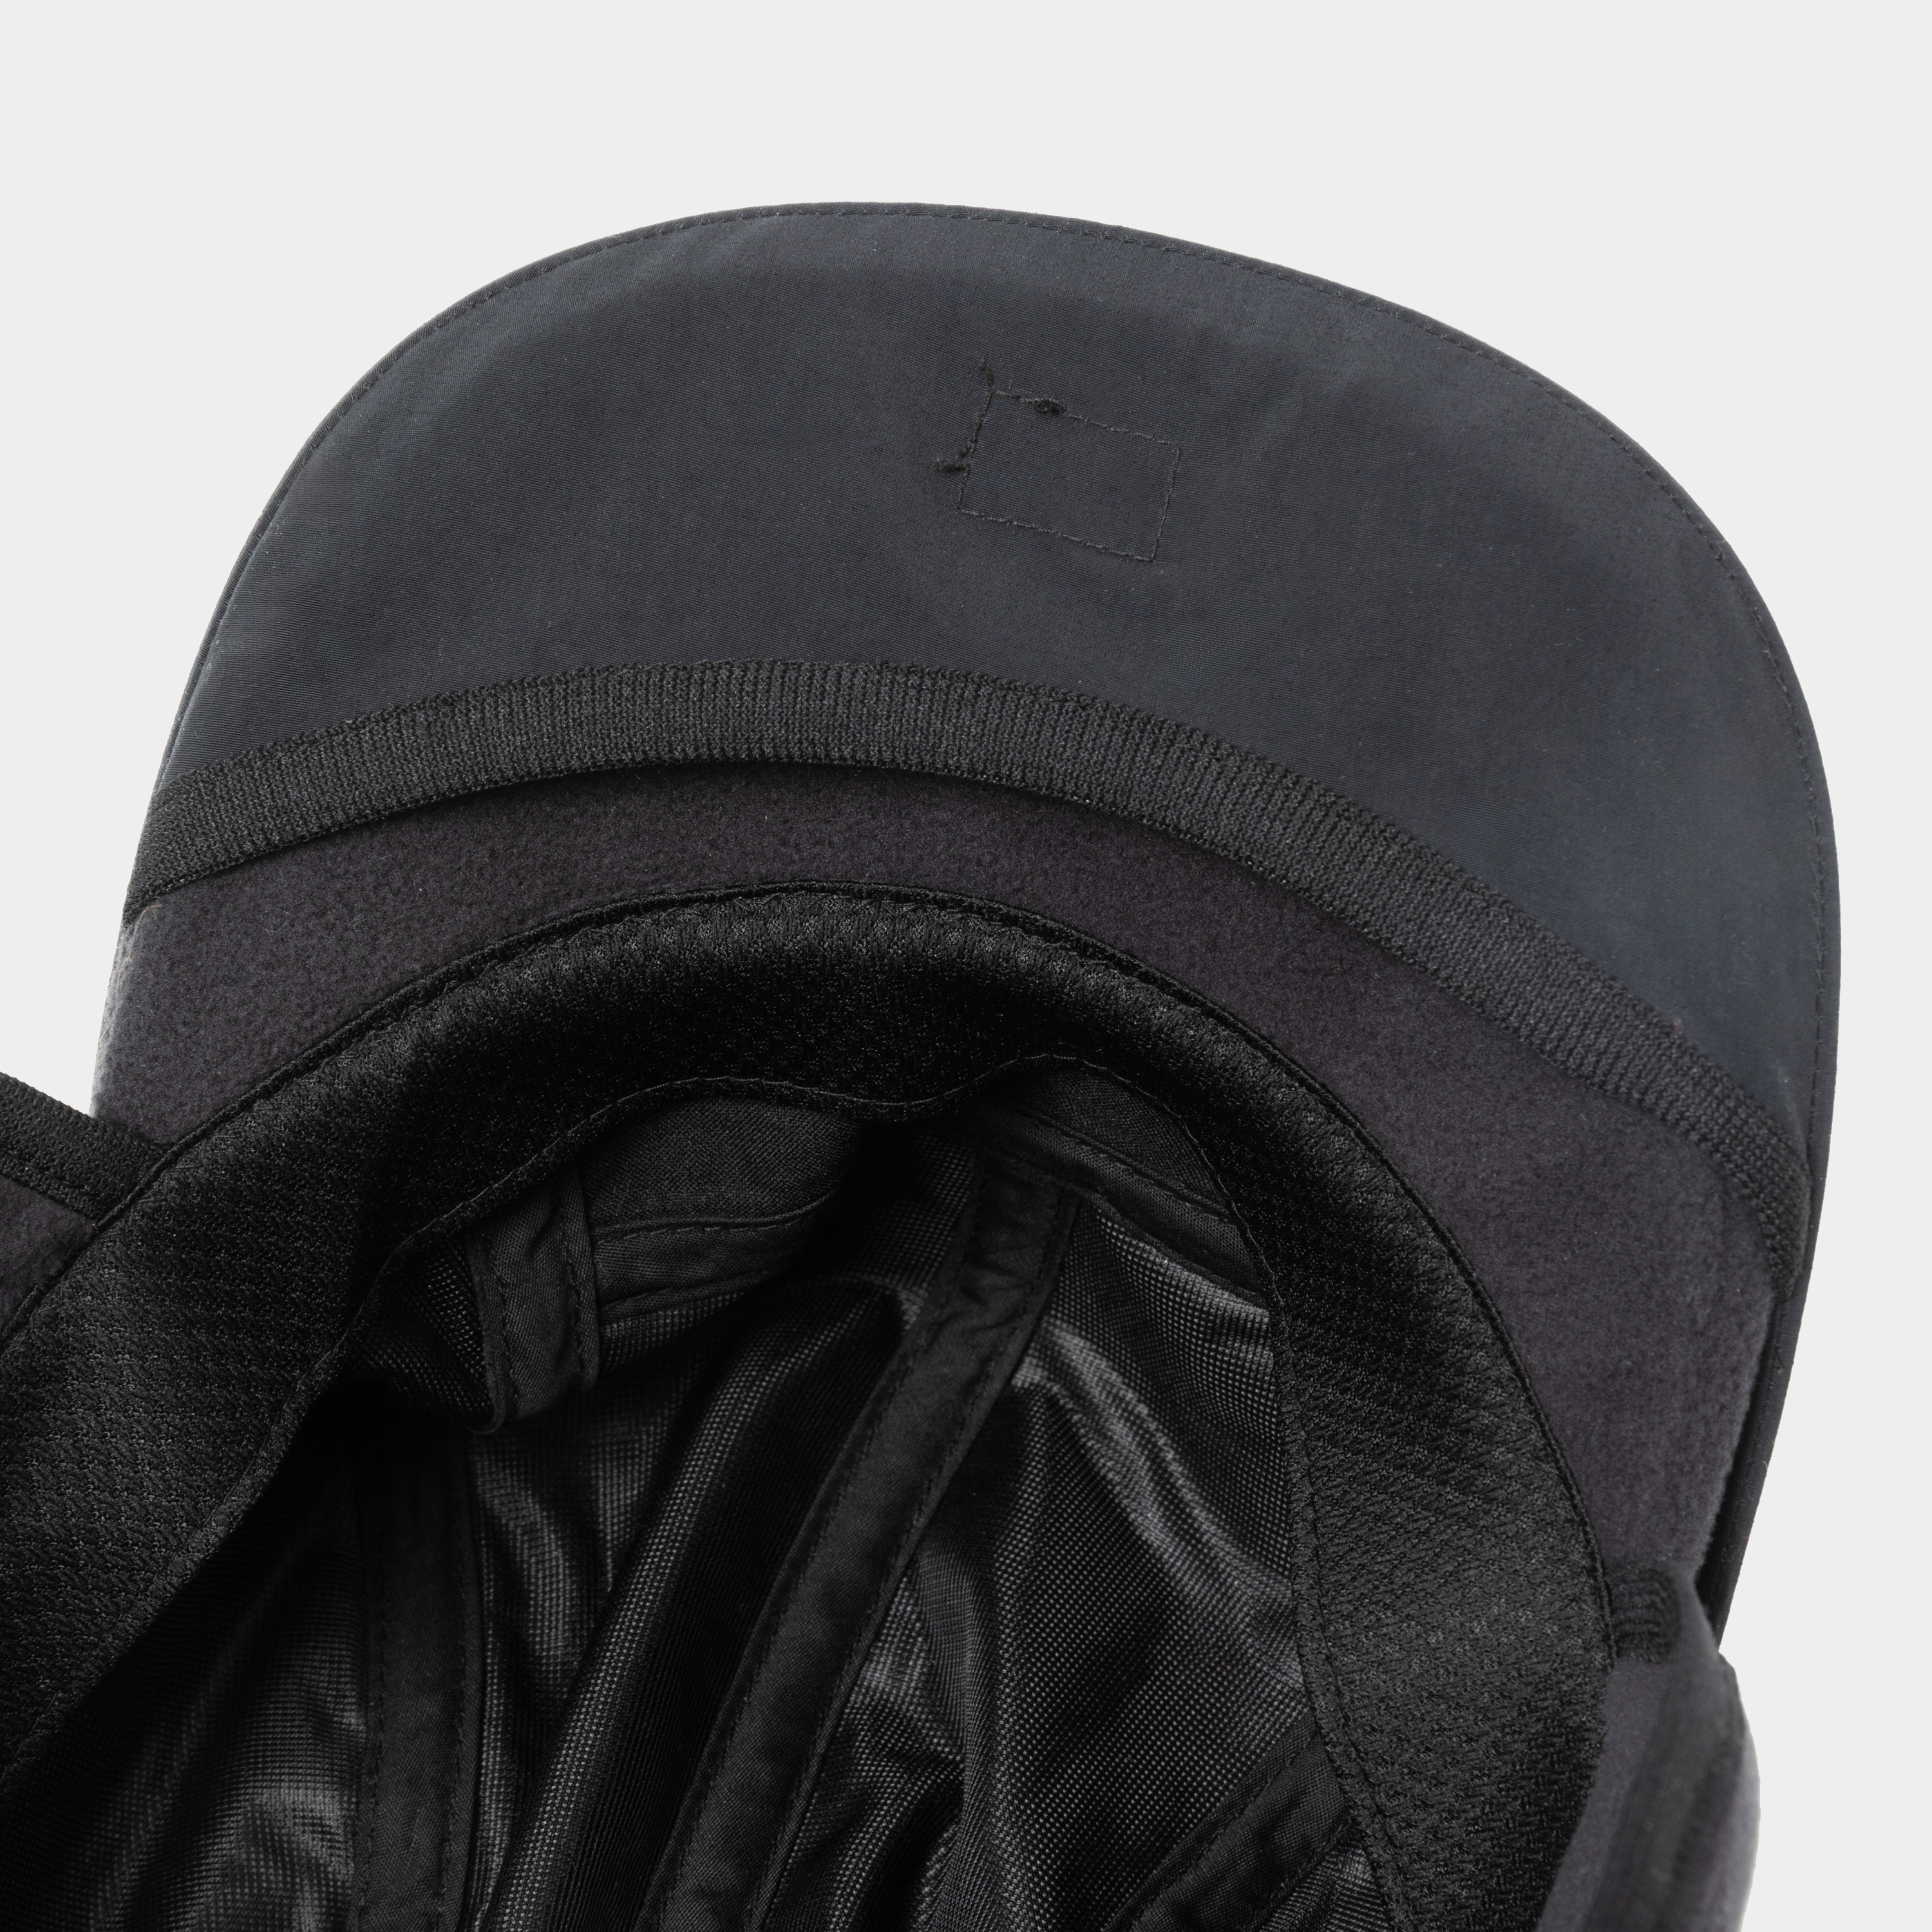 Polartec® Fleece Cover Cap/Black